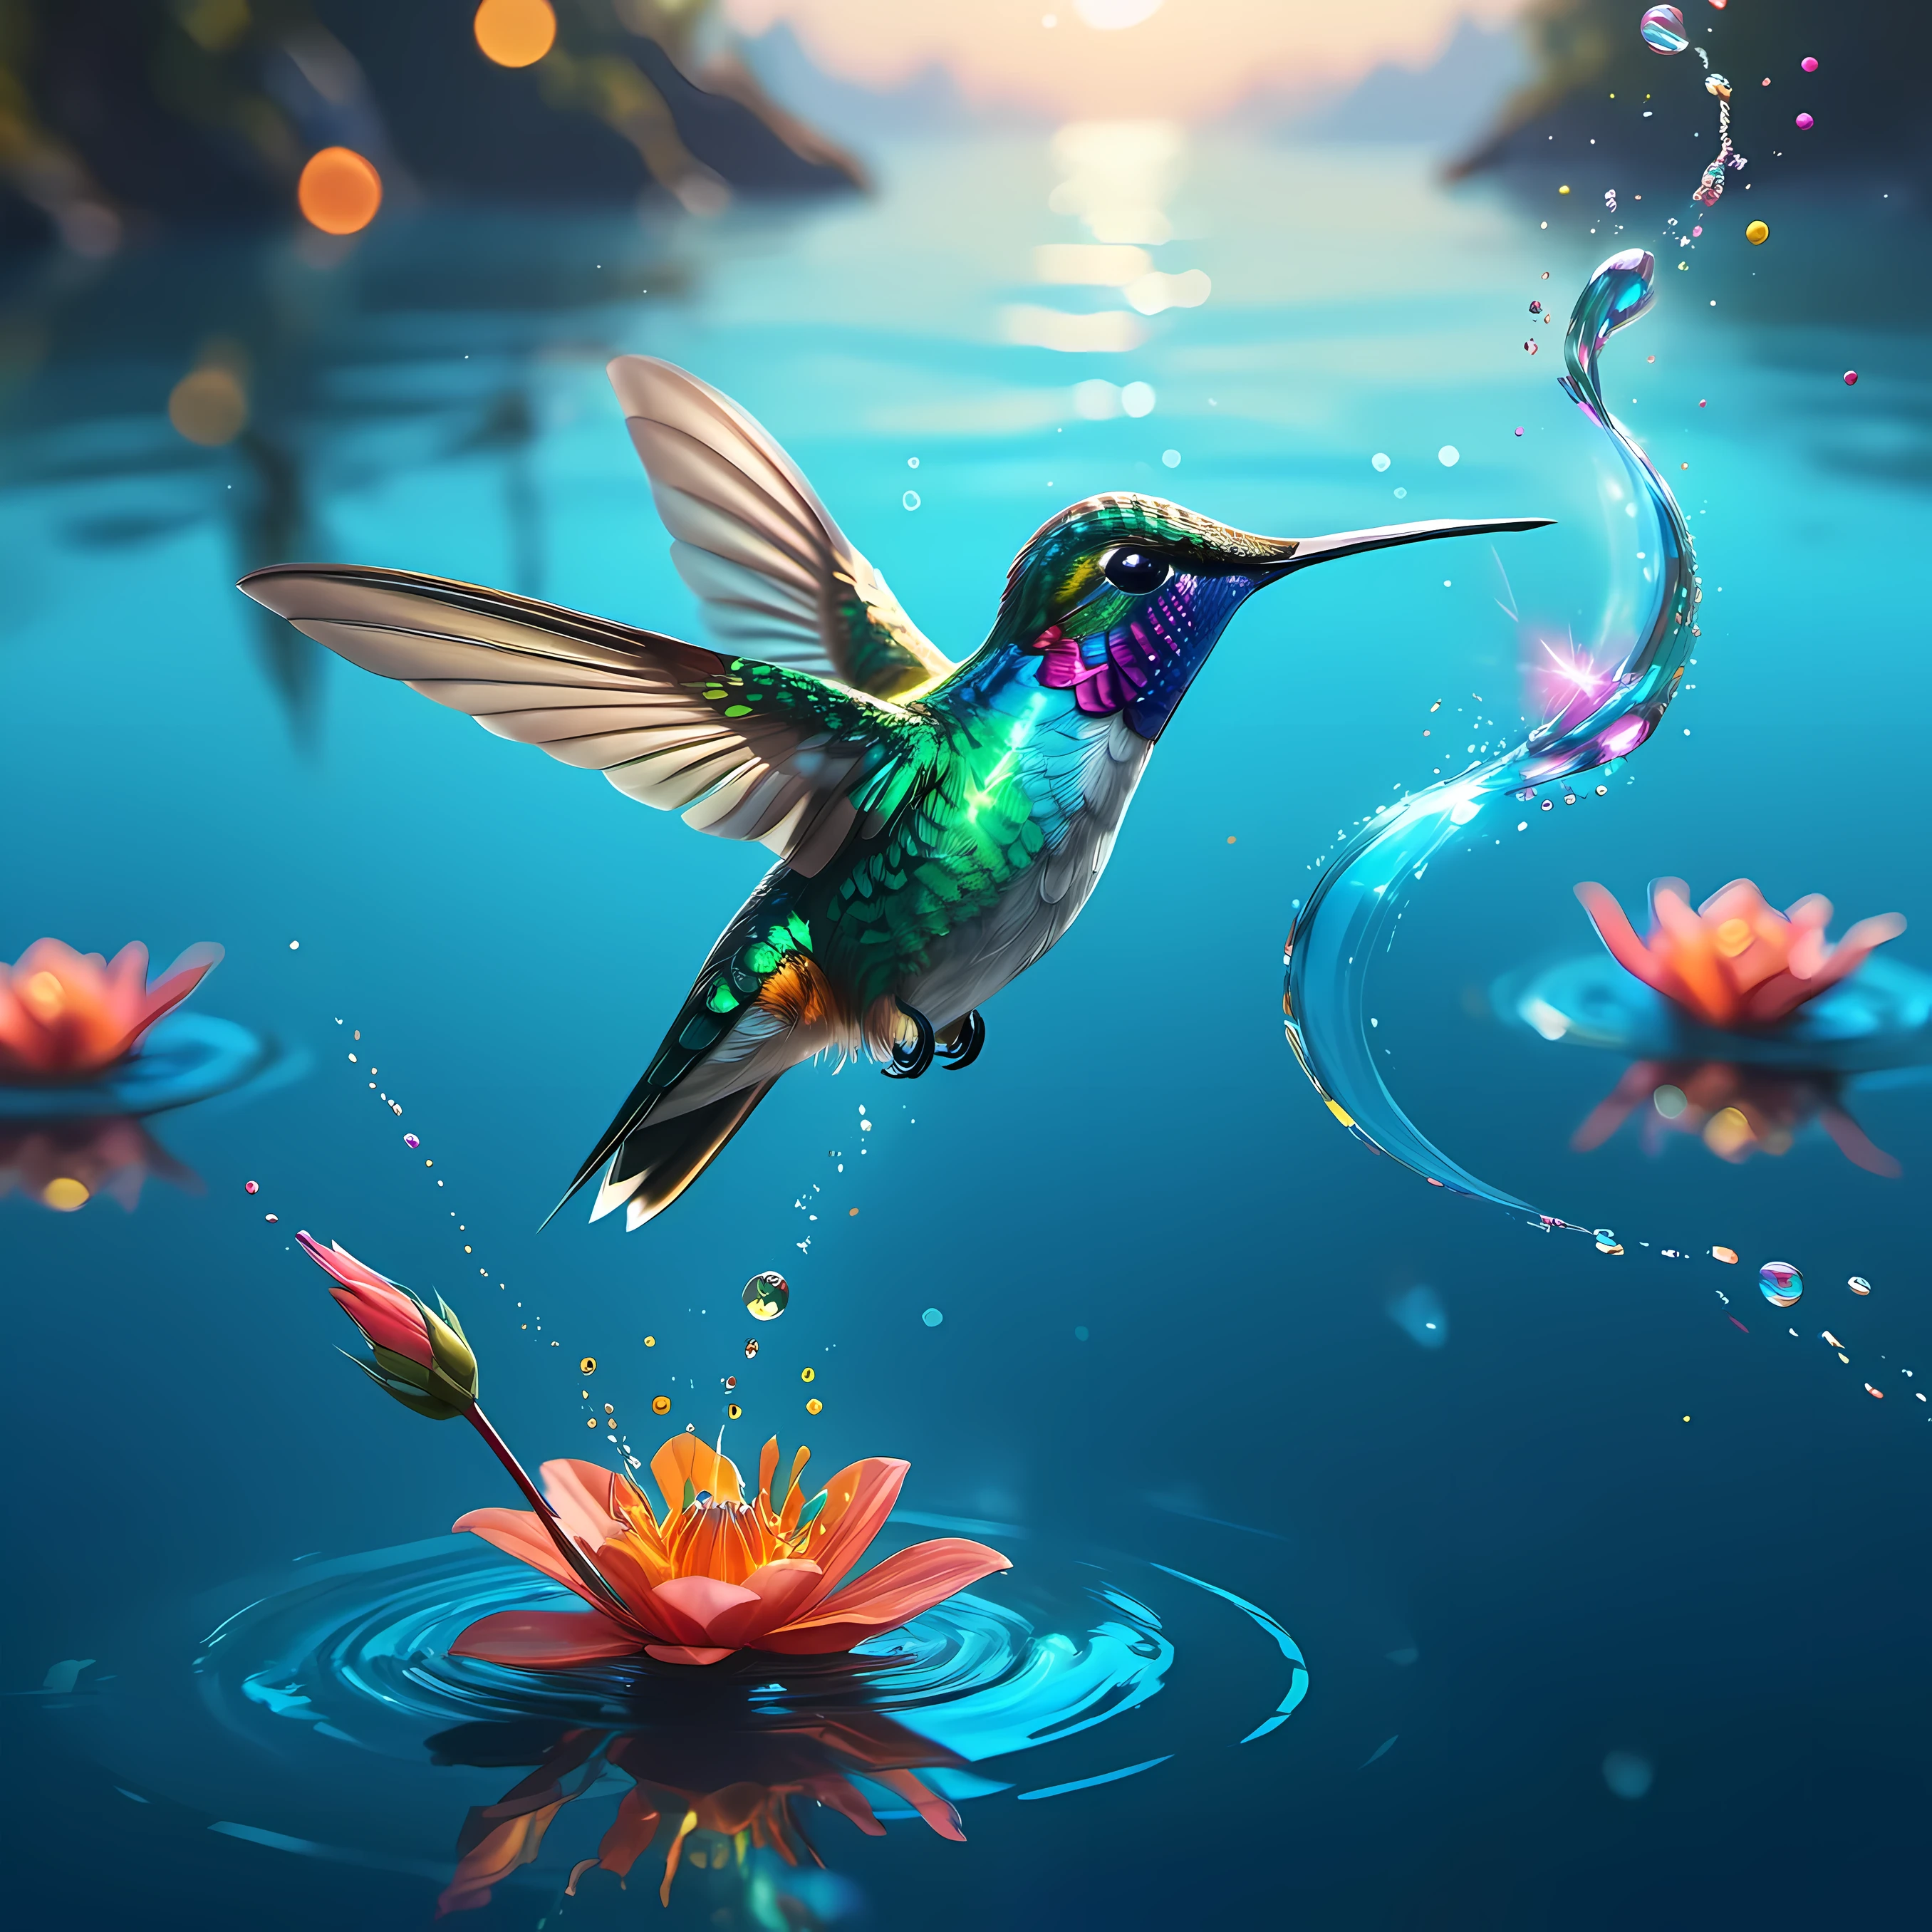 4K 超详细数字艺术作品捕捉了ハチドリ在宁静的蓝色水面上迷人的飞行, マイク・ウィンケルマンを彷彿とさせる (マイク・ウィンケルマン) リアルな絵画が作られる (ハチドリ) 受賞歴のある自然写真の鮮やかさに似ている. このシーンは、鳥が水面を優雅に滑空する様子を描いている。, 全身が虹色に輝く, 特にその目, 2つの輝く宝石のように輝く. この壮大なコンセプトアートはダイナミックなボケ効果を披露しています, デジタルペインティング技術の熟練度を強調, Shutterstockコンテスト承認傑作に類似.

